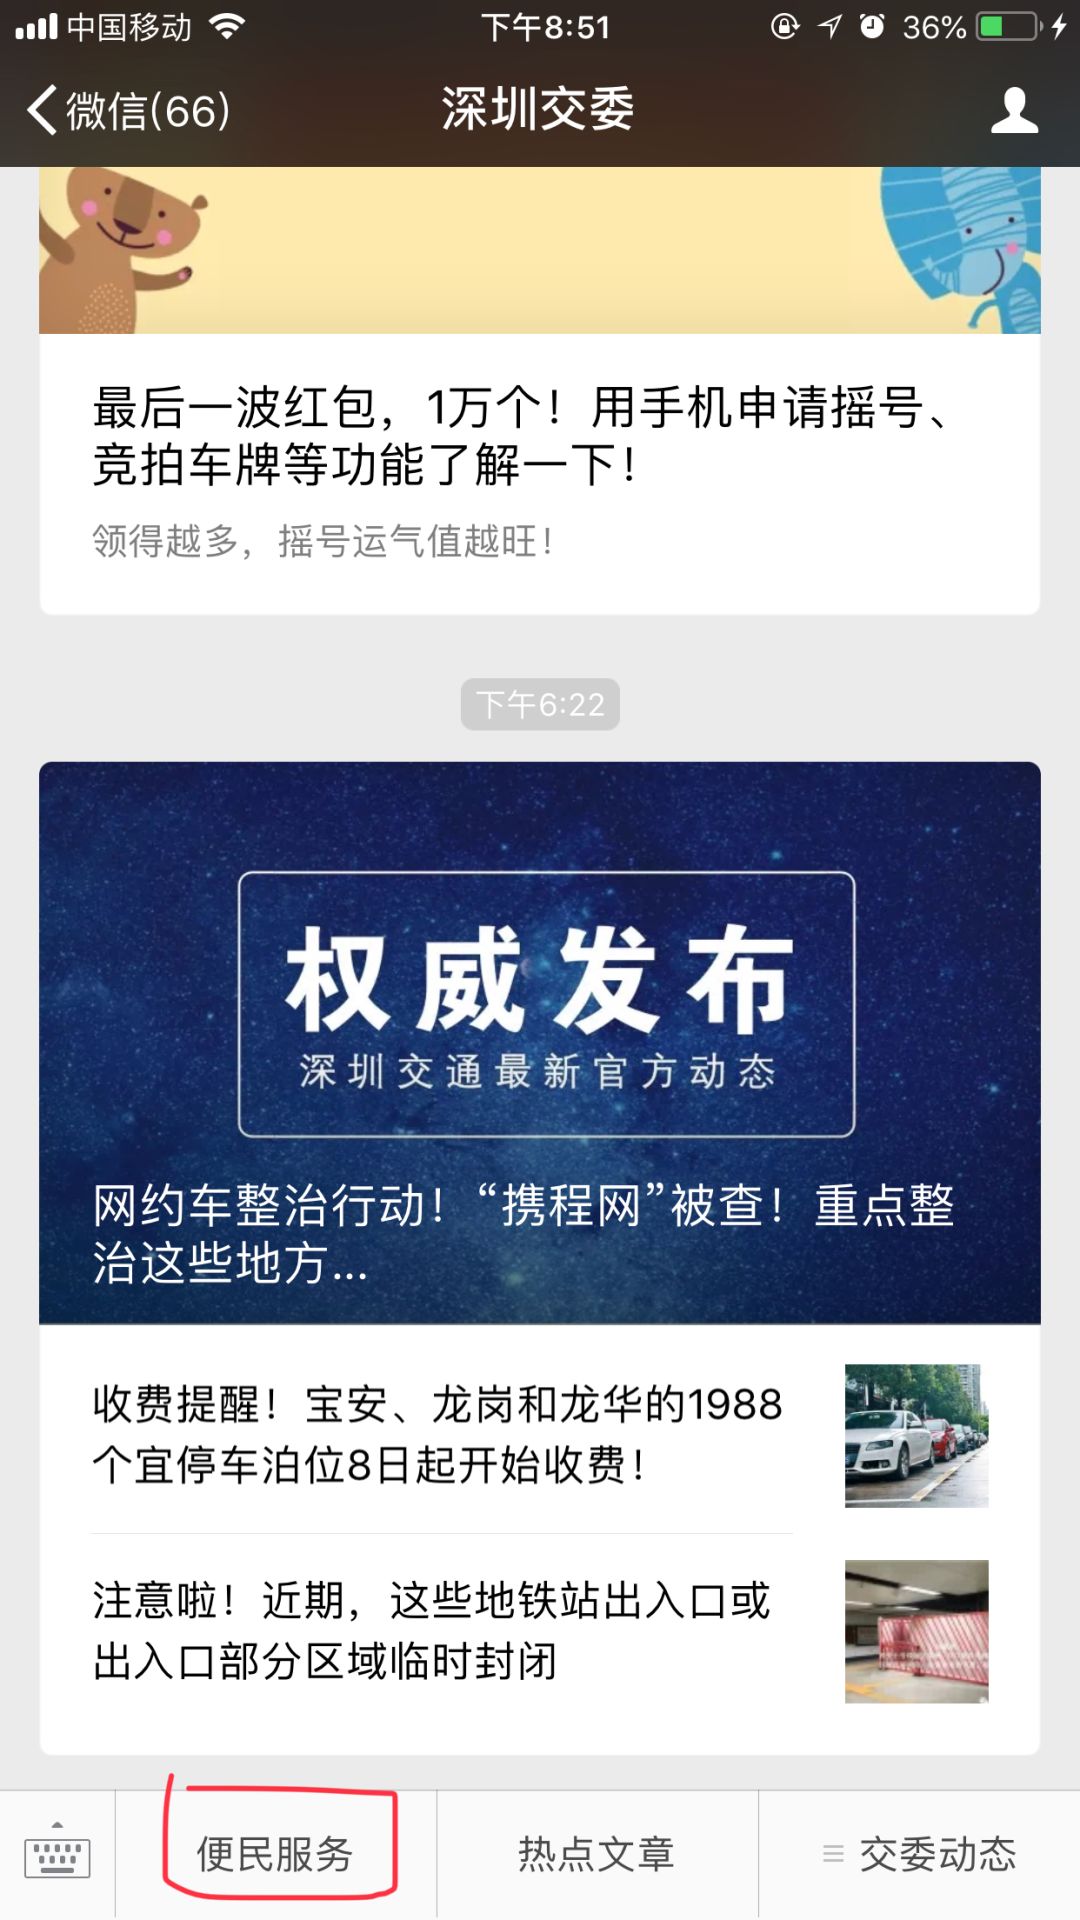 深圳终于可以用手机申请摇号、竞拍车牌了!需